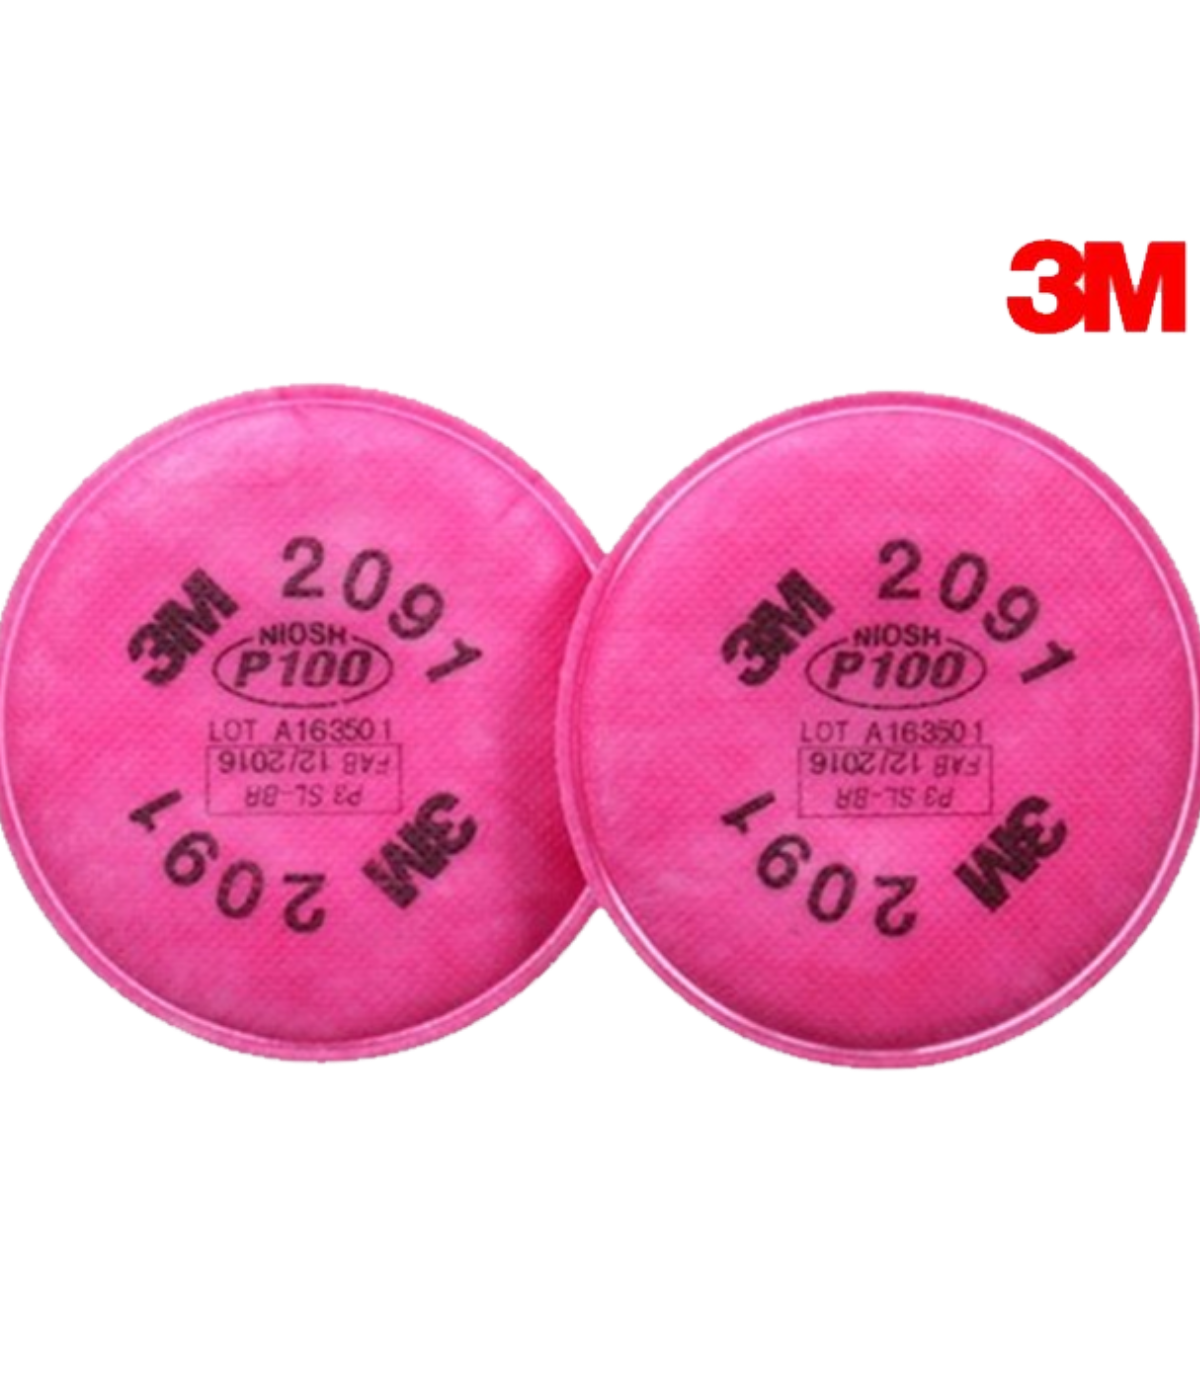 buy-3m-p100-2091-2097-filters-dental-genie